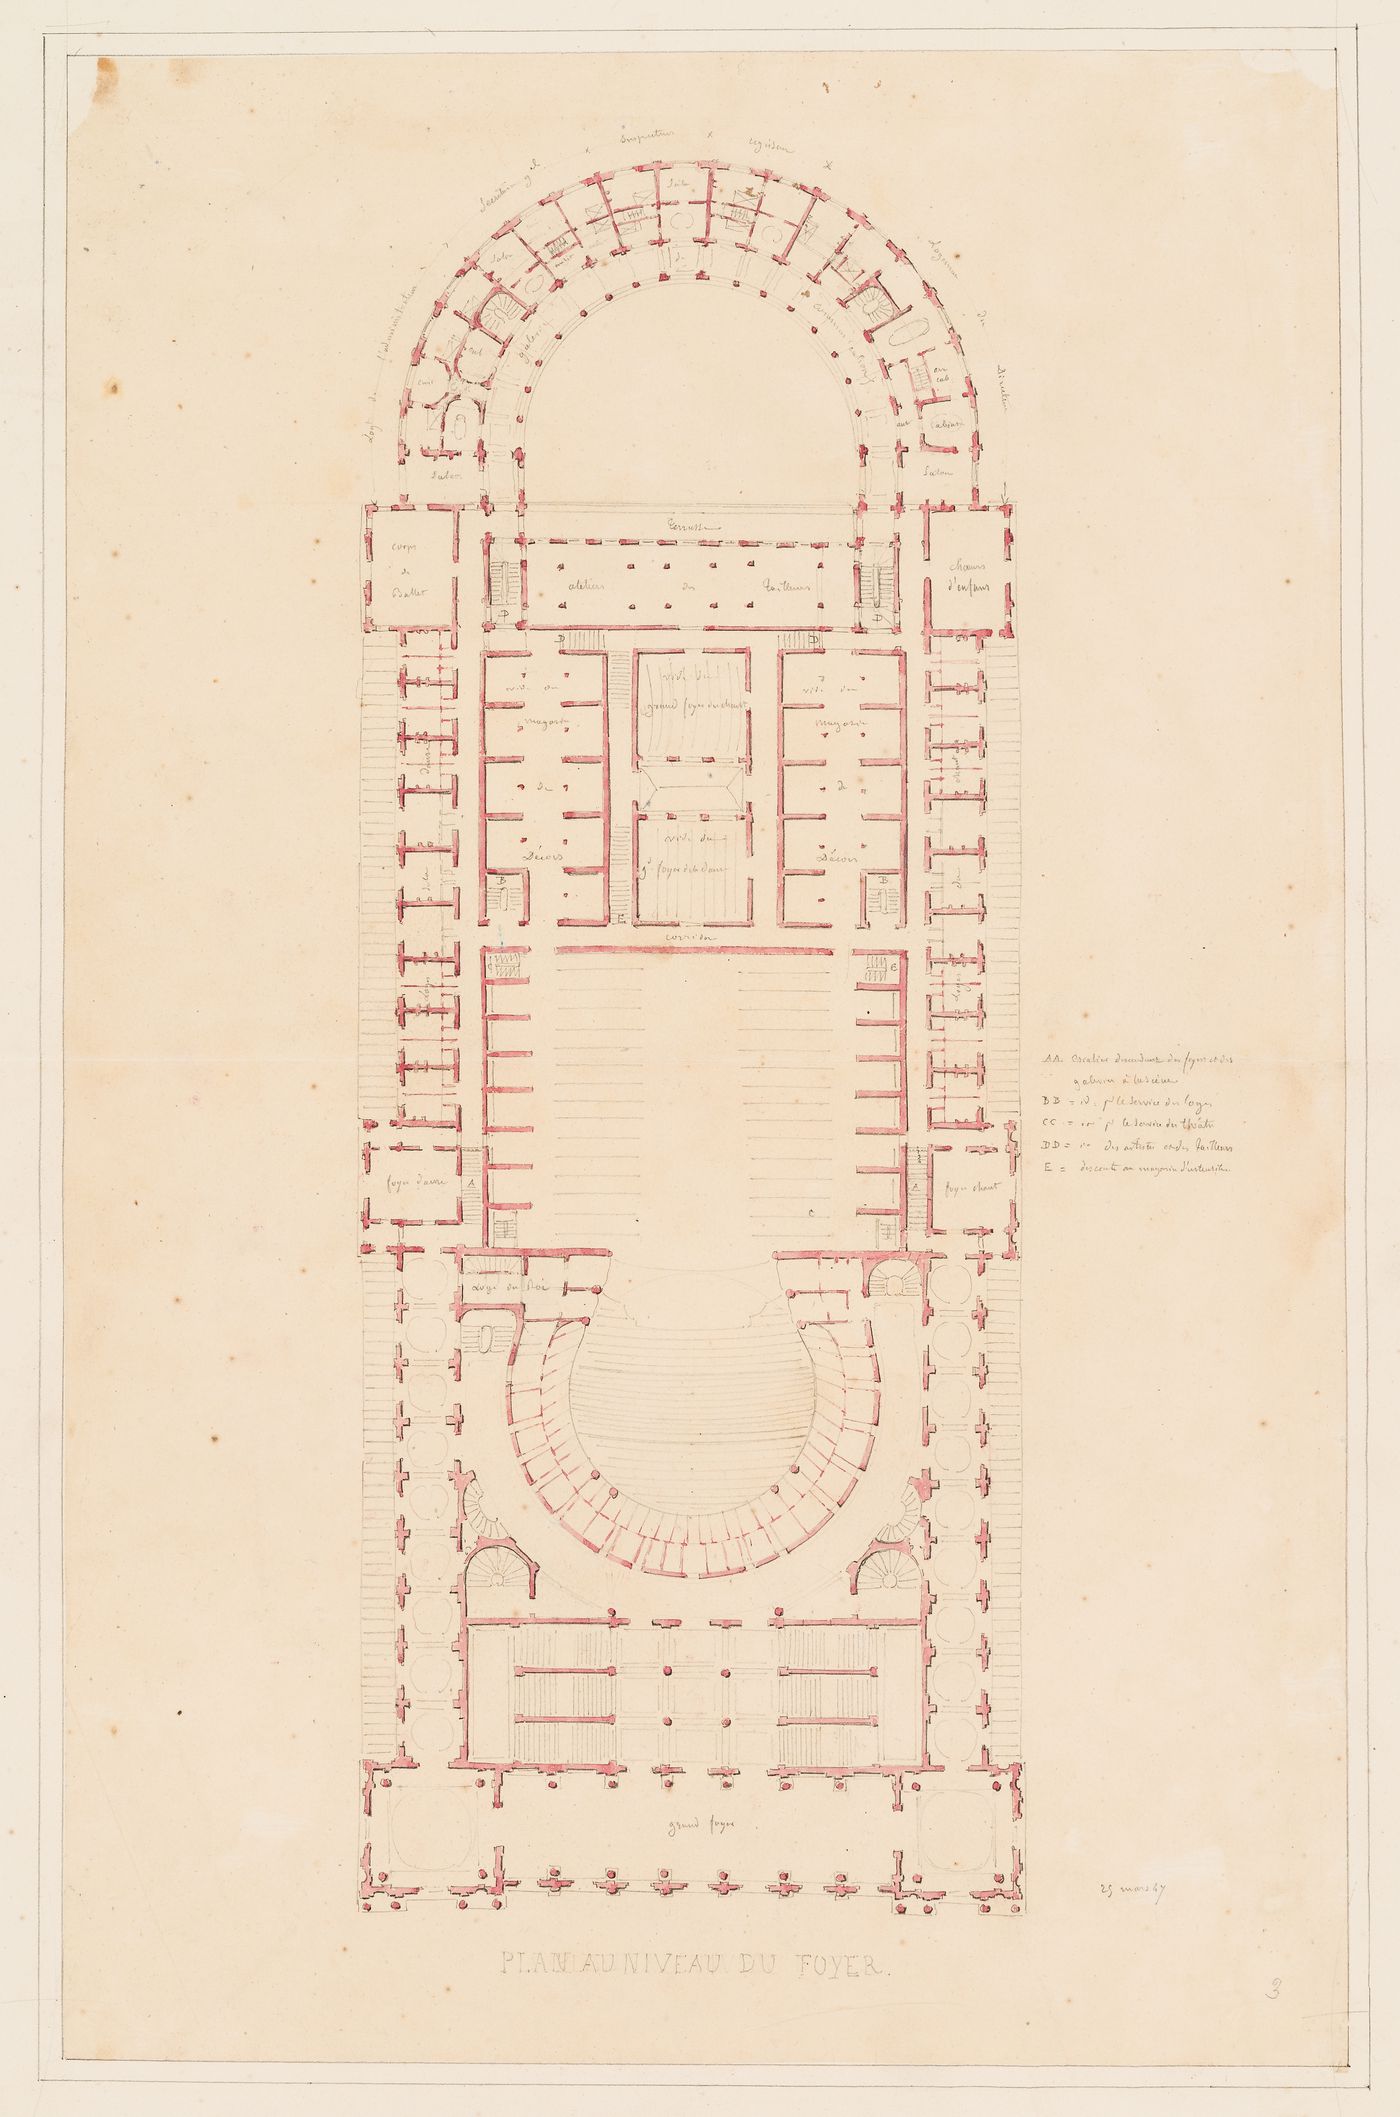 Plan for the "niveau du foyer" for an opera house for the Académie royale de musique